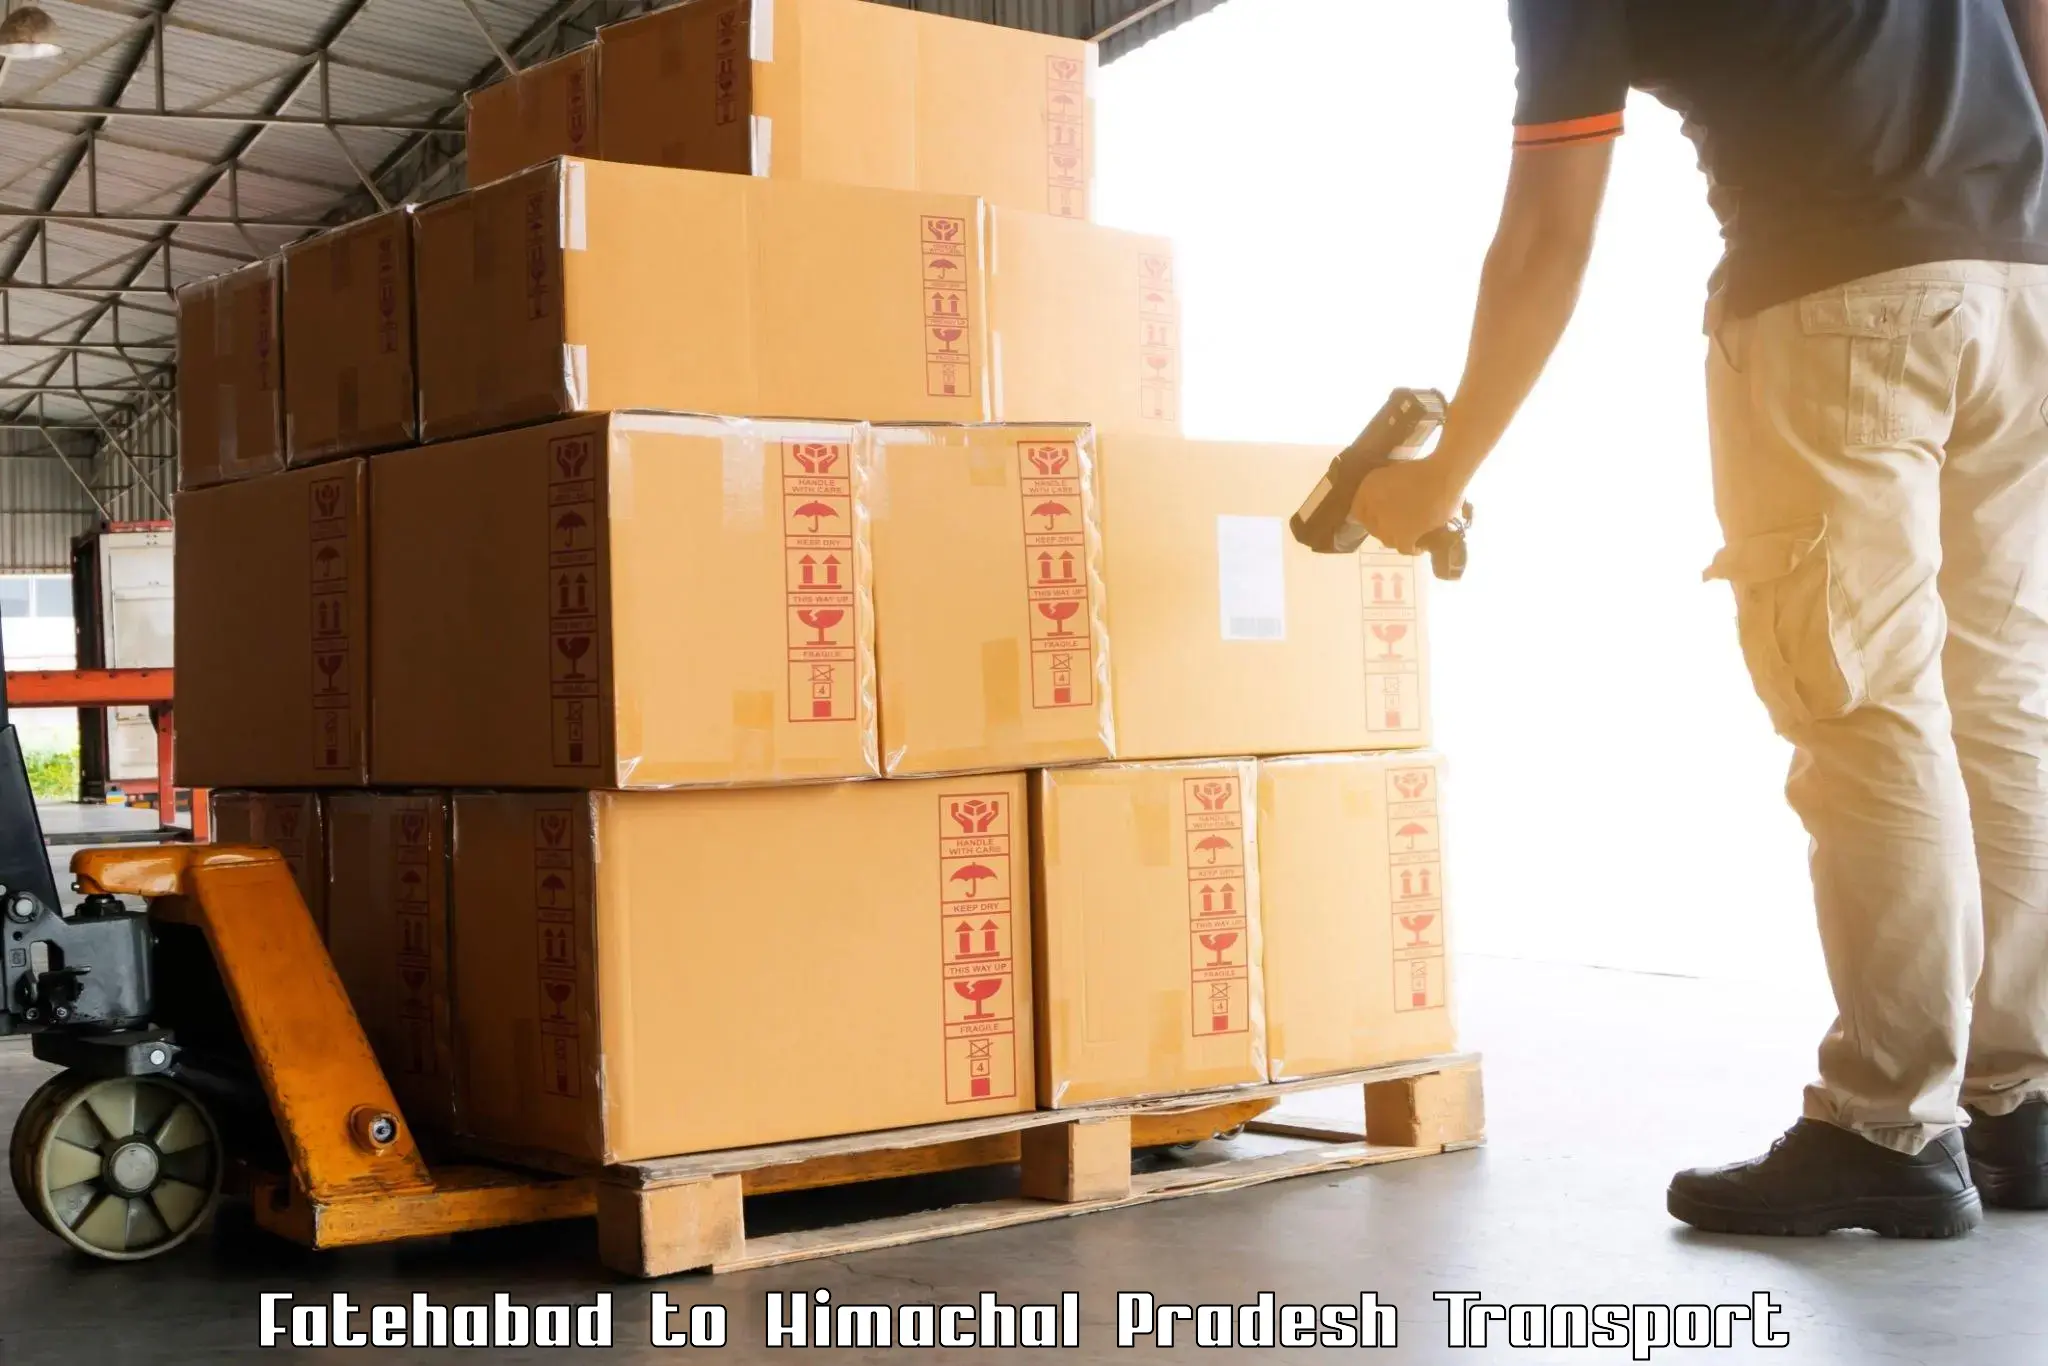 Delivery service in Fatehabad to Una Himachal Pradesh